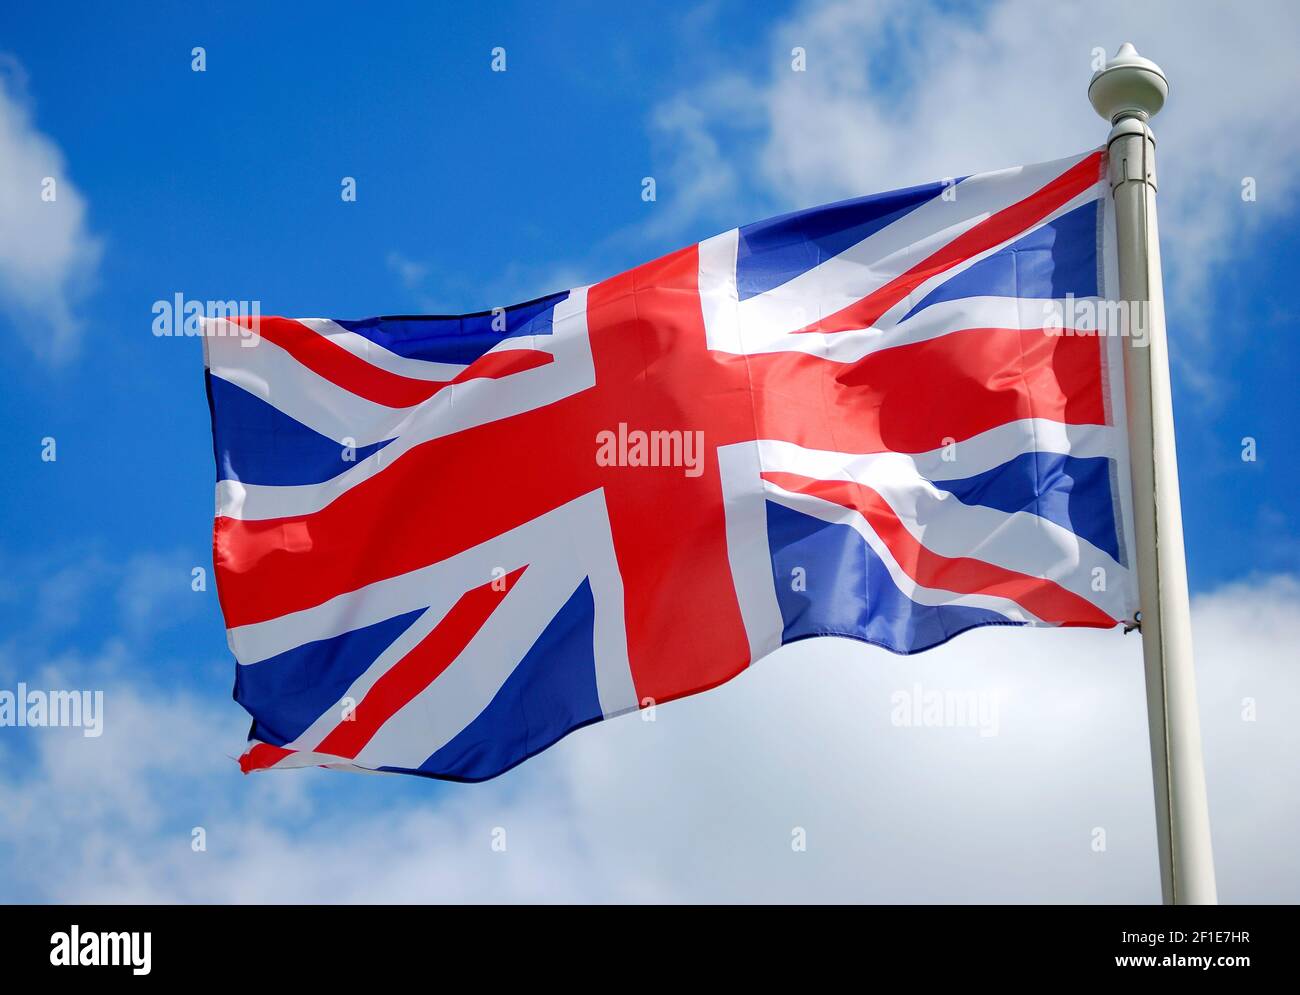 Union Jack flag flying on flagpole, City of Westminster, Greater London, England, United Kingdom Stock Photo